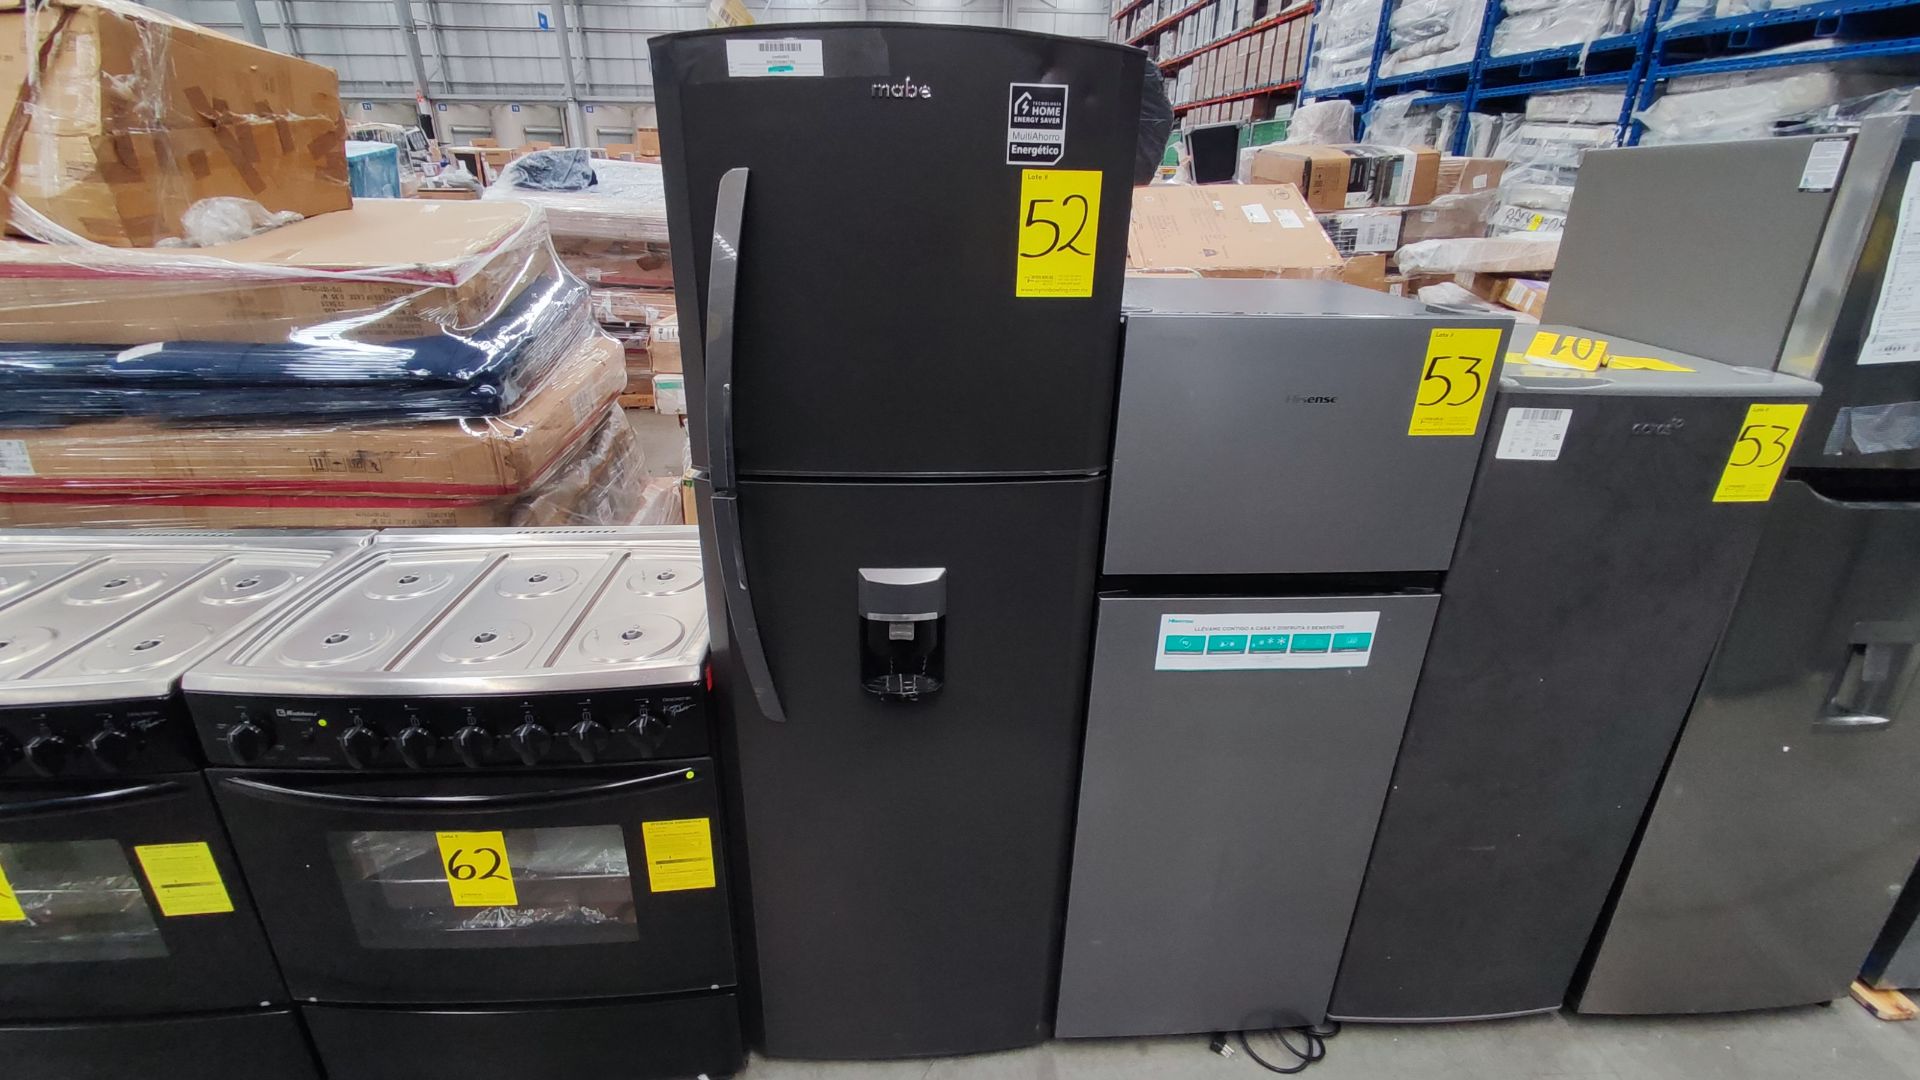 1 Refrigerador Marca Mabe, Modelo RMA300FJMR, Serie 2204B712240, Color Gris, Detalles Estéticos, Fa